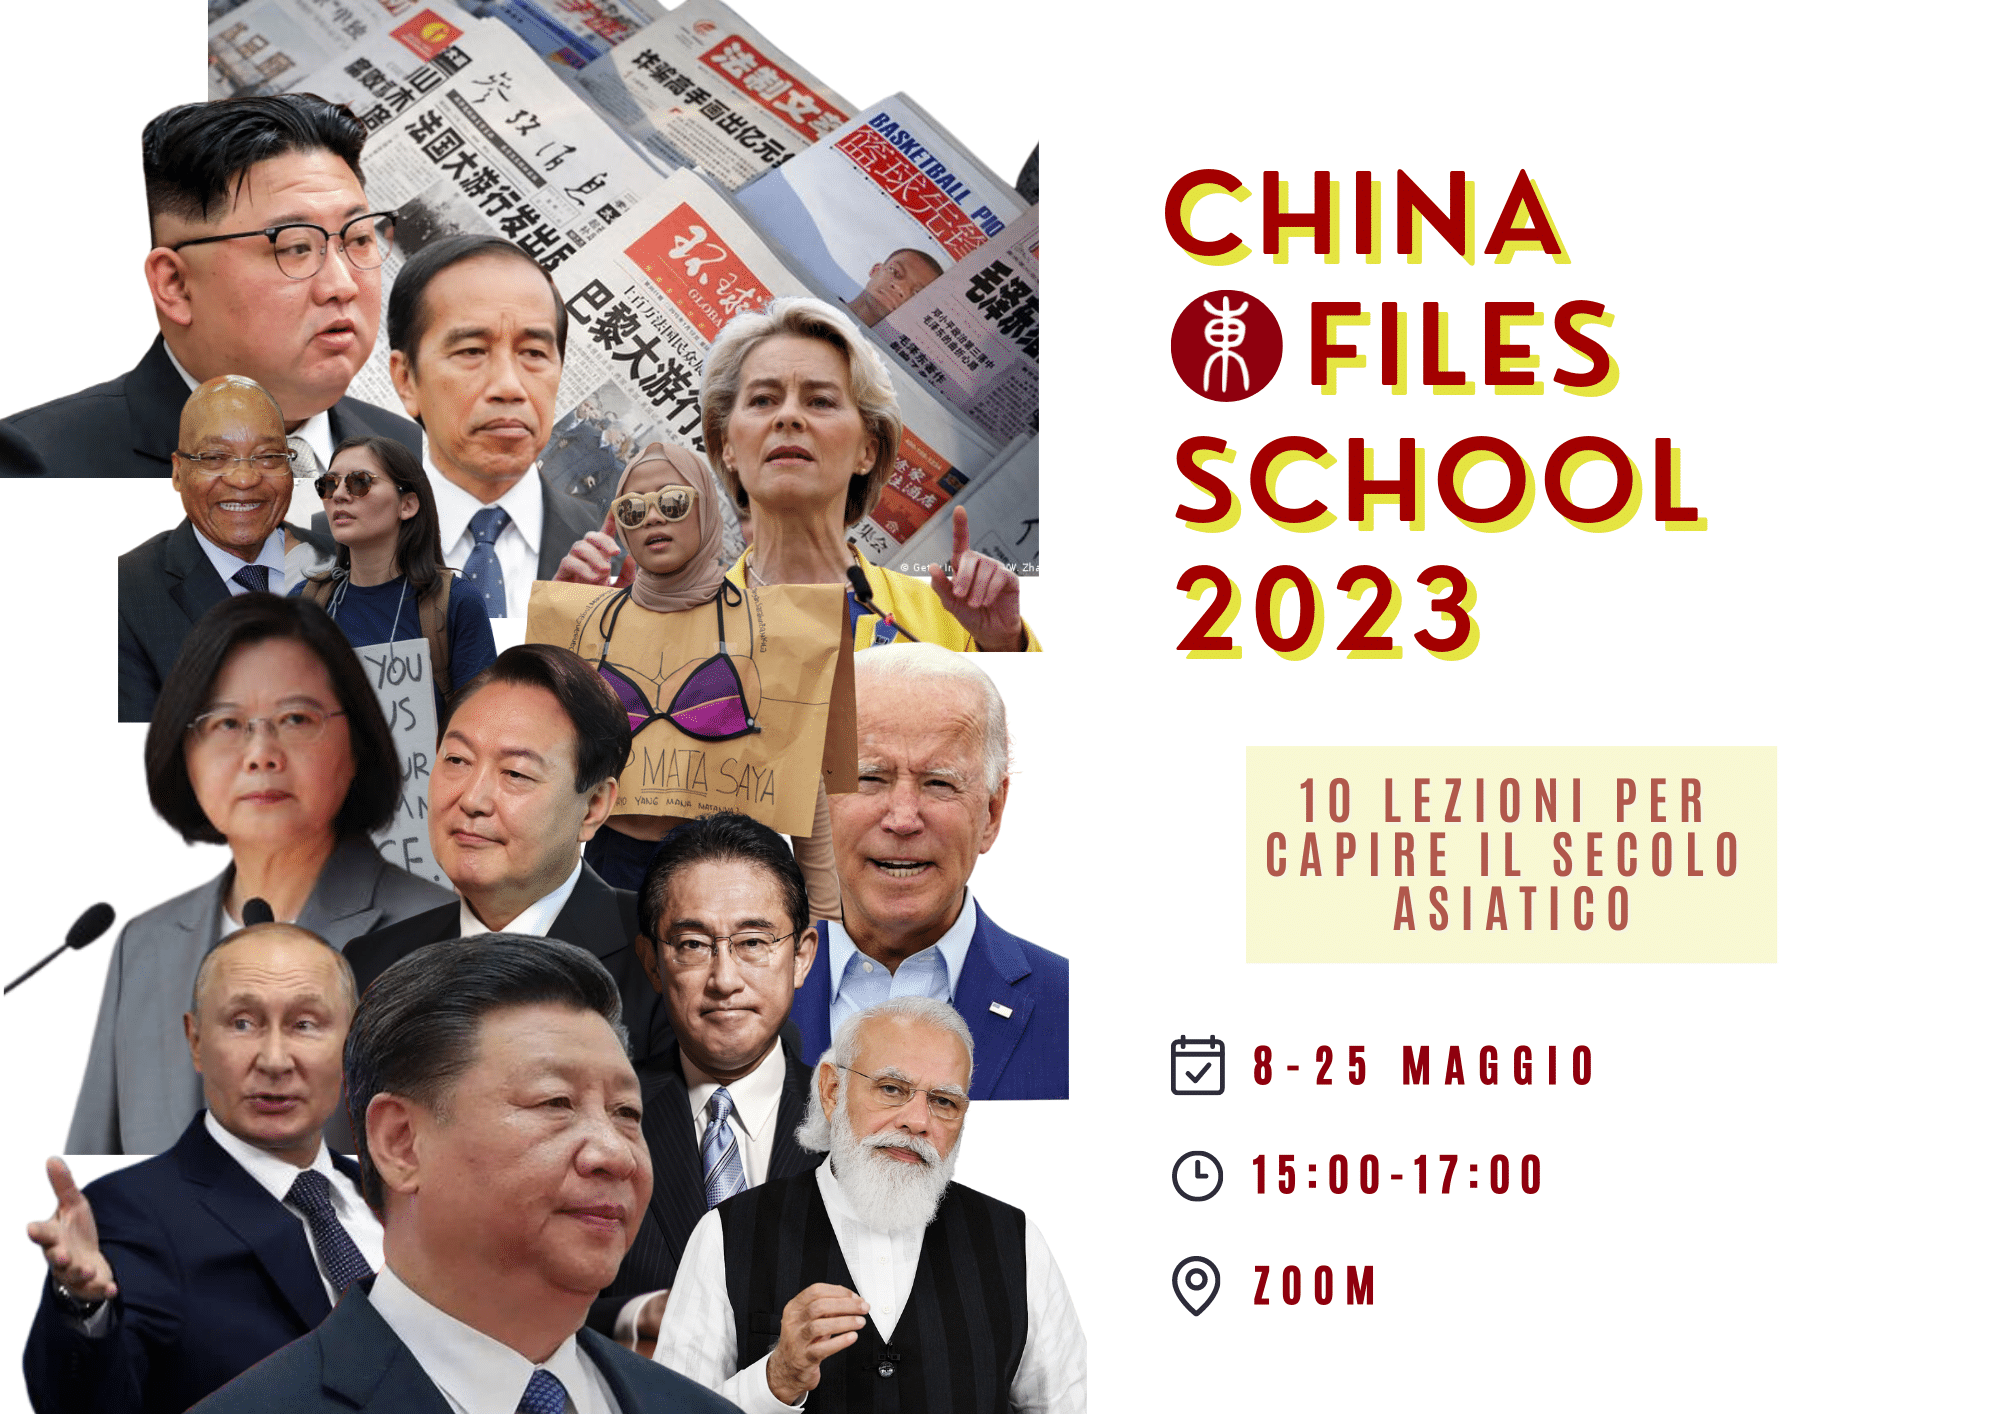 china files school maggio 2023